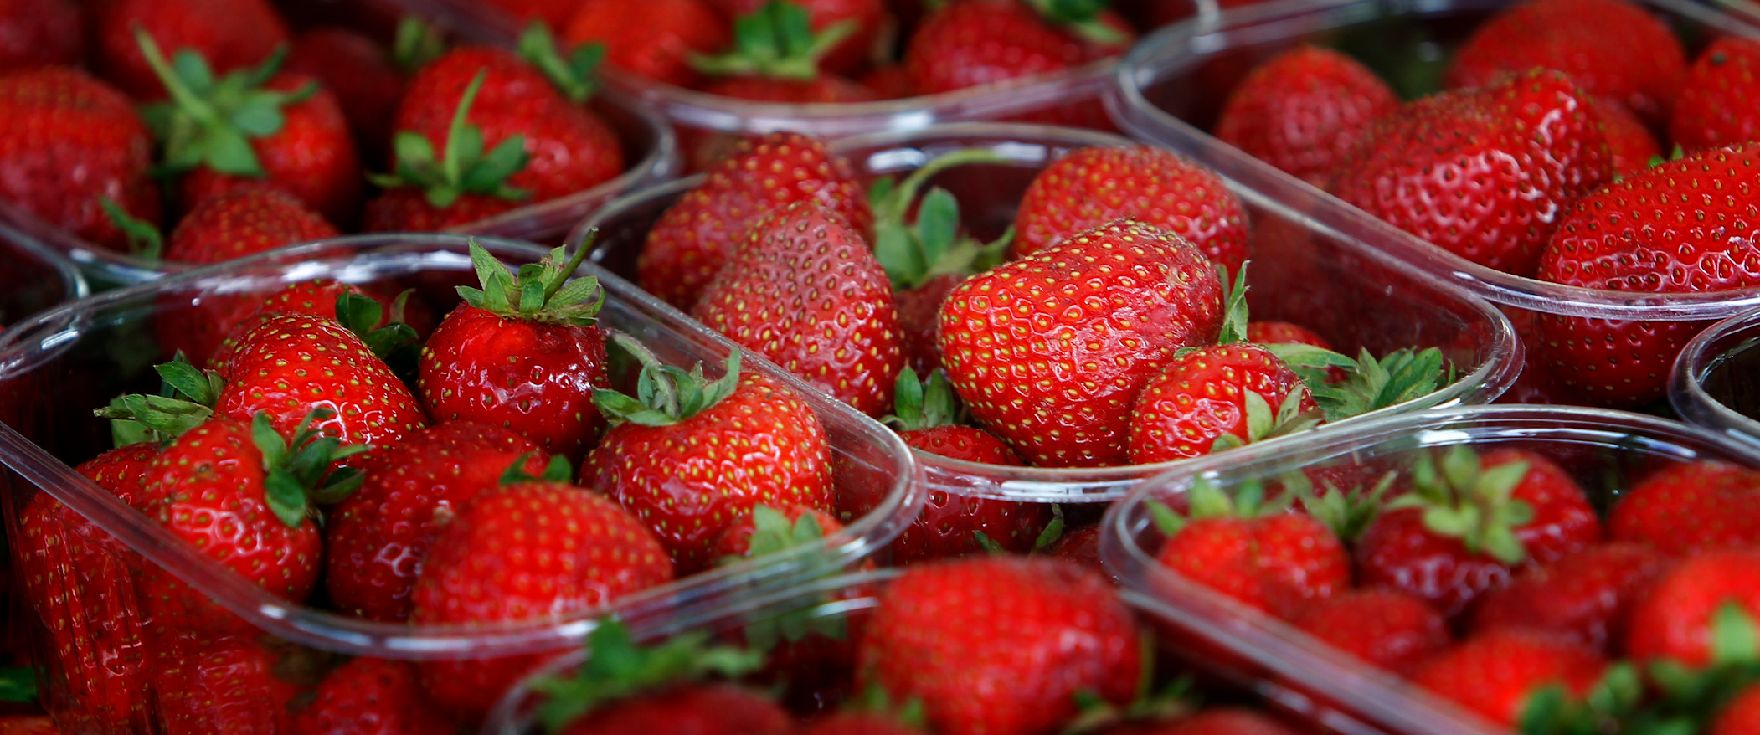 Frische Erdbeeren in Plastikschüsseln. Schlagworte: Frucht, Lebensmittel, Natur, Obst, Pflanze